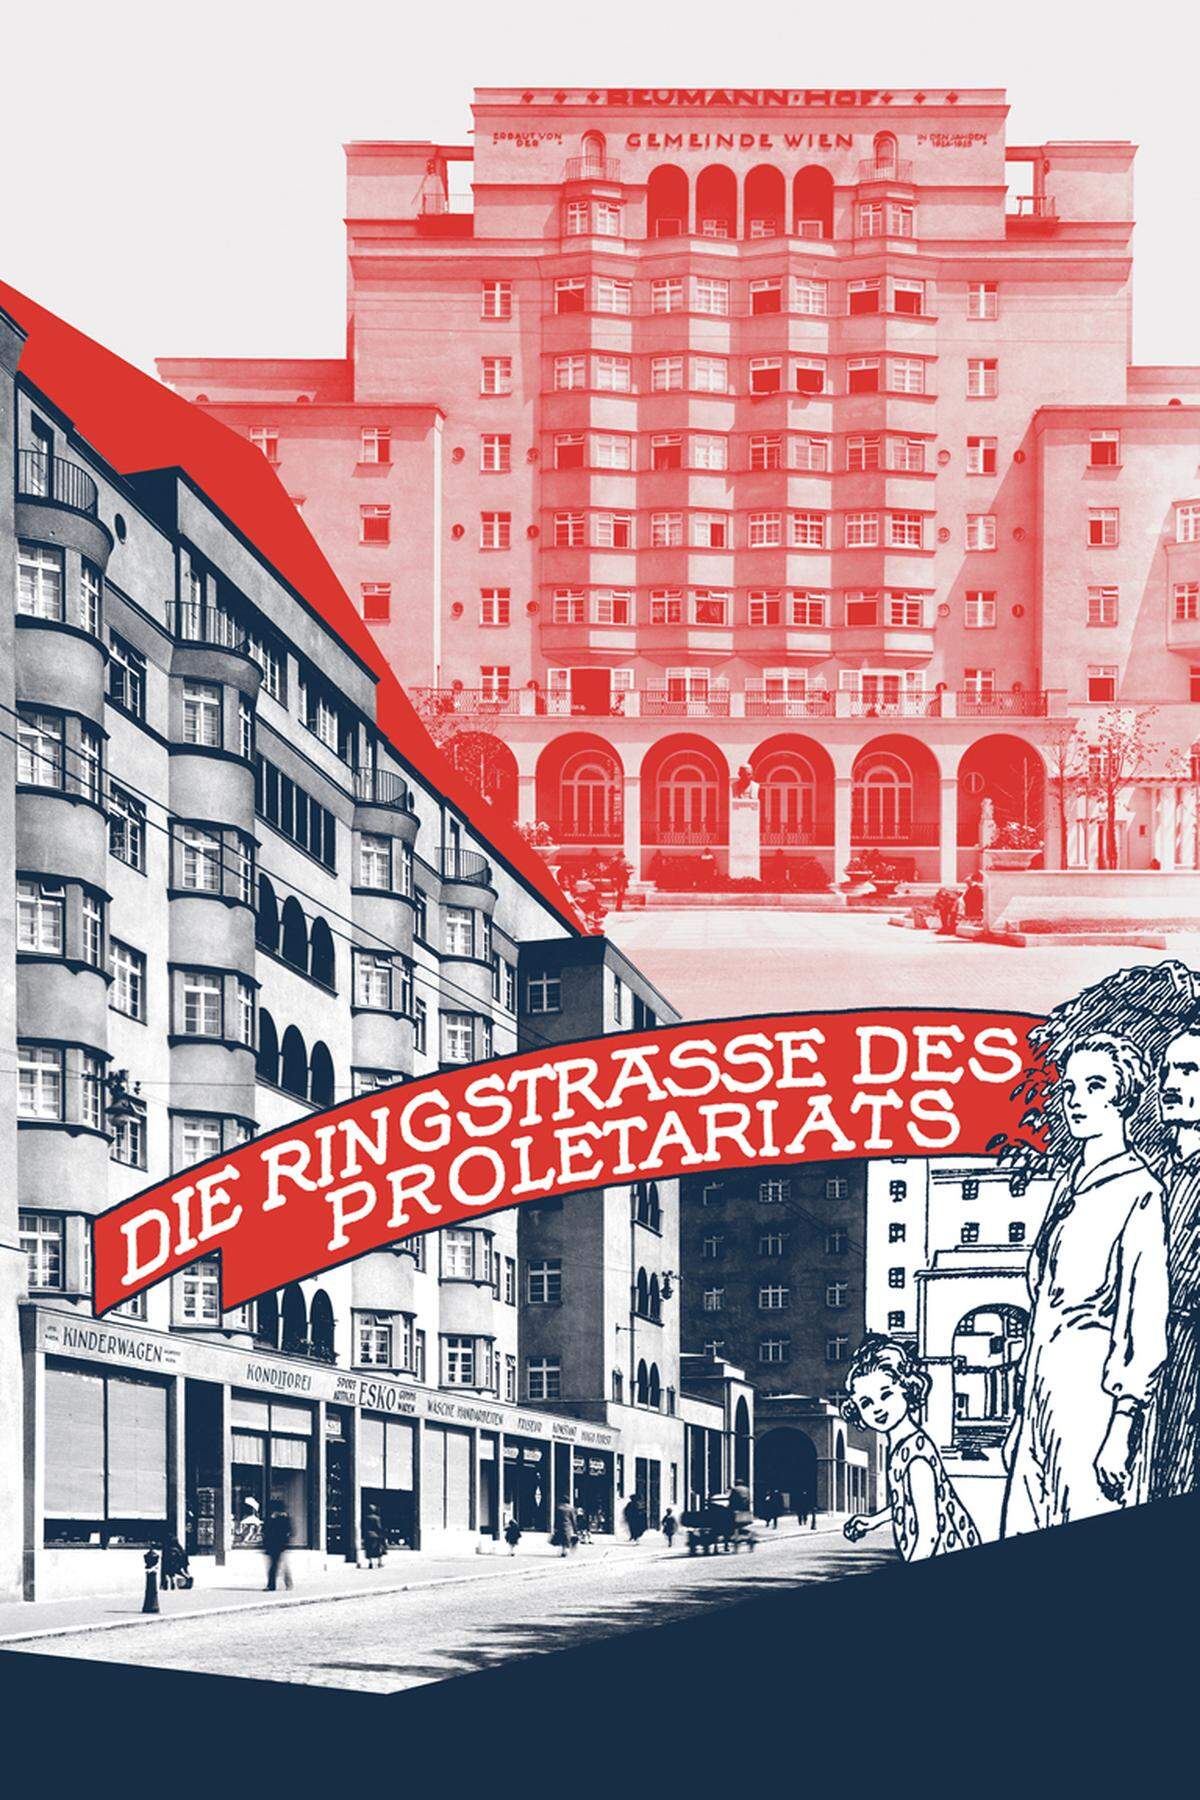 Anlässlich des 150-jährigen Jubiläums der Wiener Ringstraße läuft seit Mai im "Waschsalon" des Karl-Marx-Hofs in Wien-Heiligenstadt eine Ausstellung zur "Ringstraße des Proletariats", dem Wiener Gürtel.